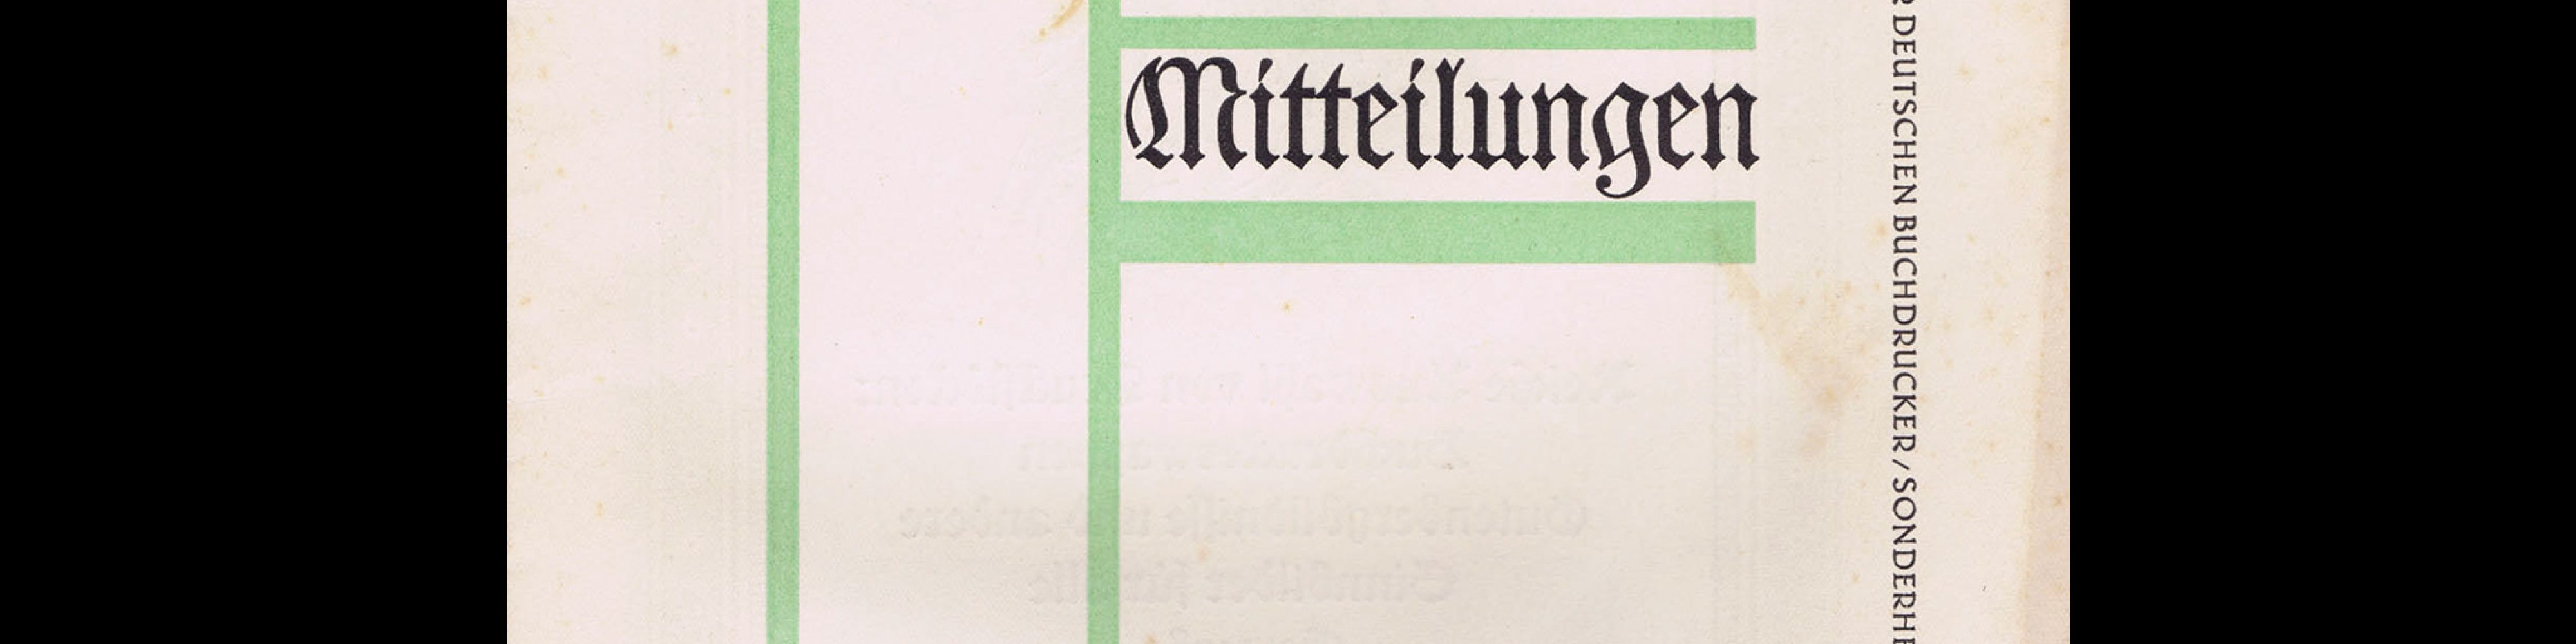 Typographische Mitteilungen, Sonderheft Vertretertag, September 1925